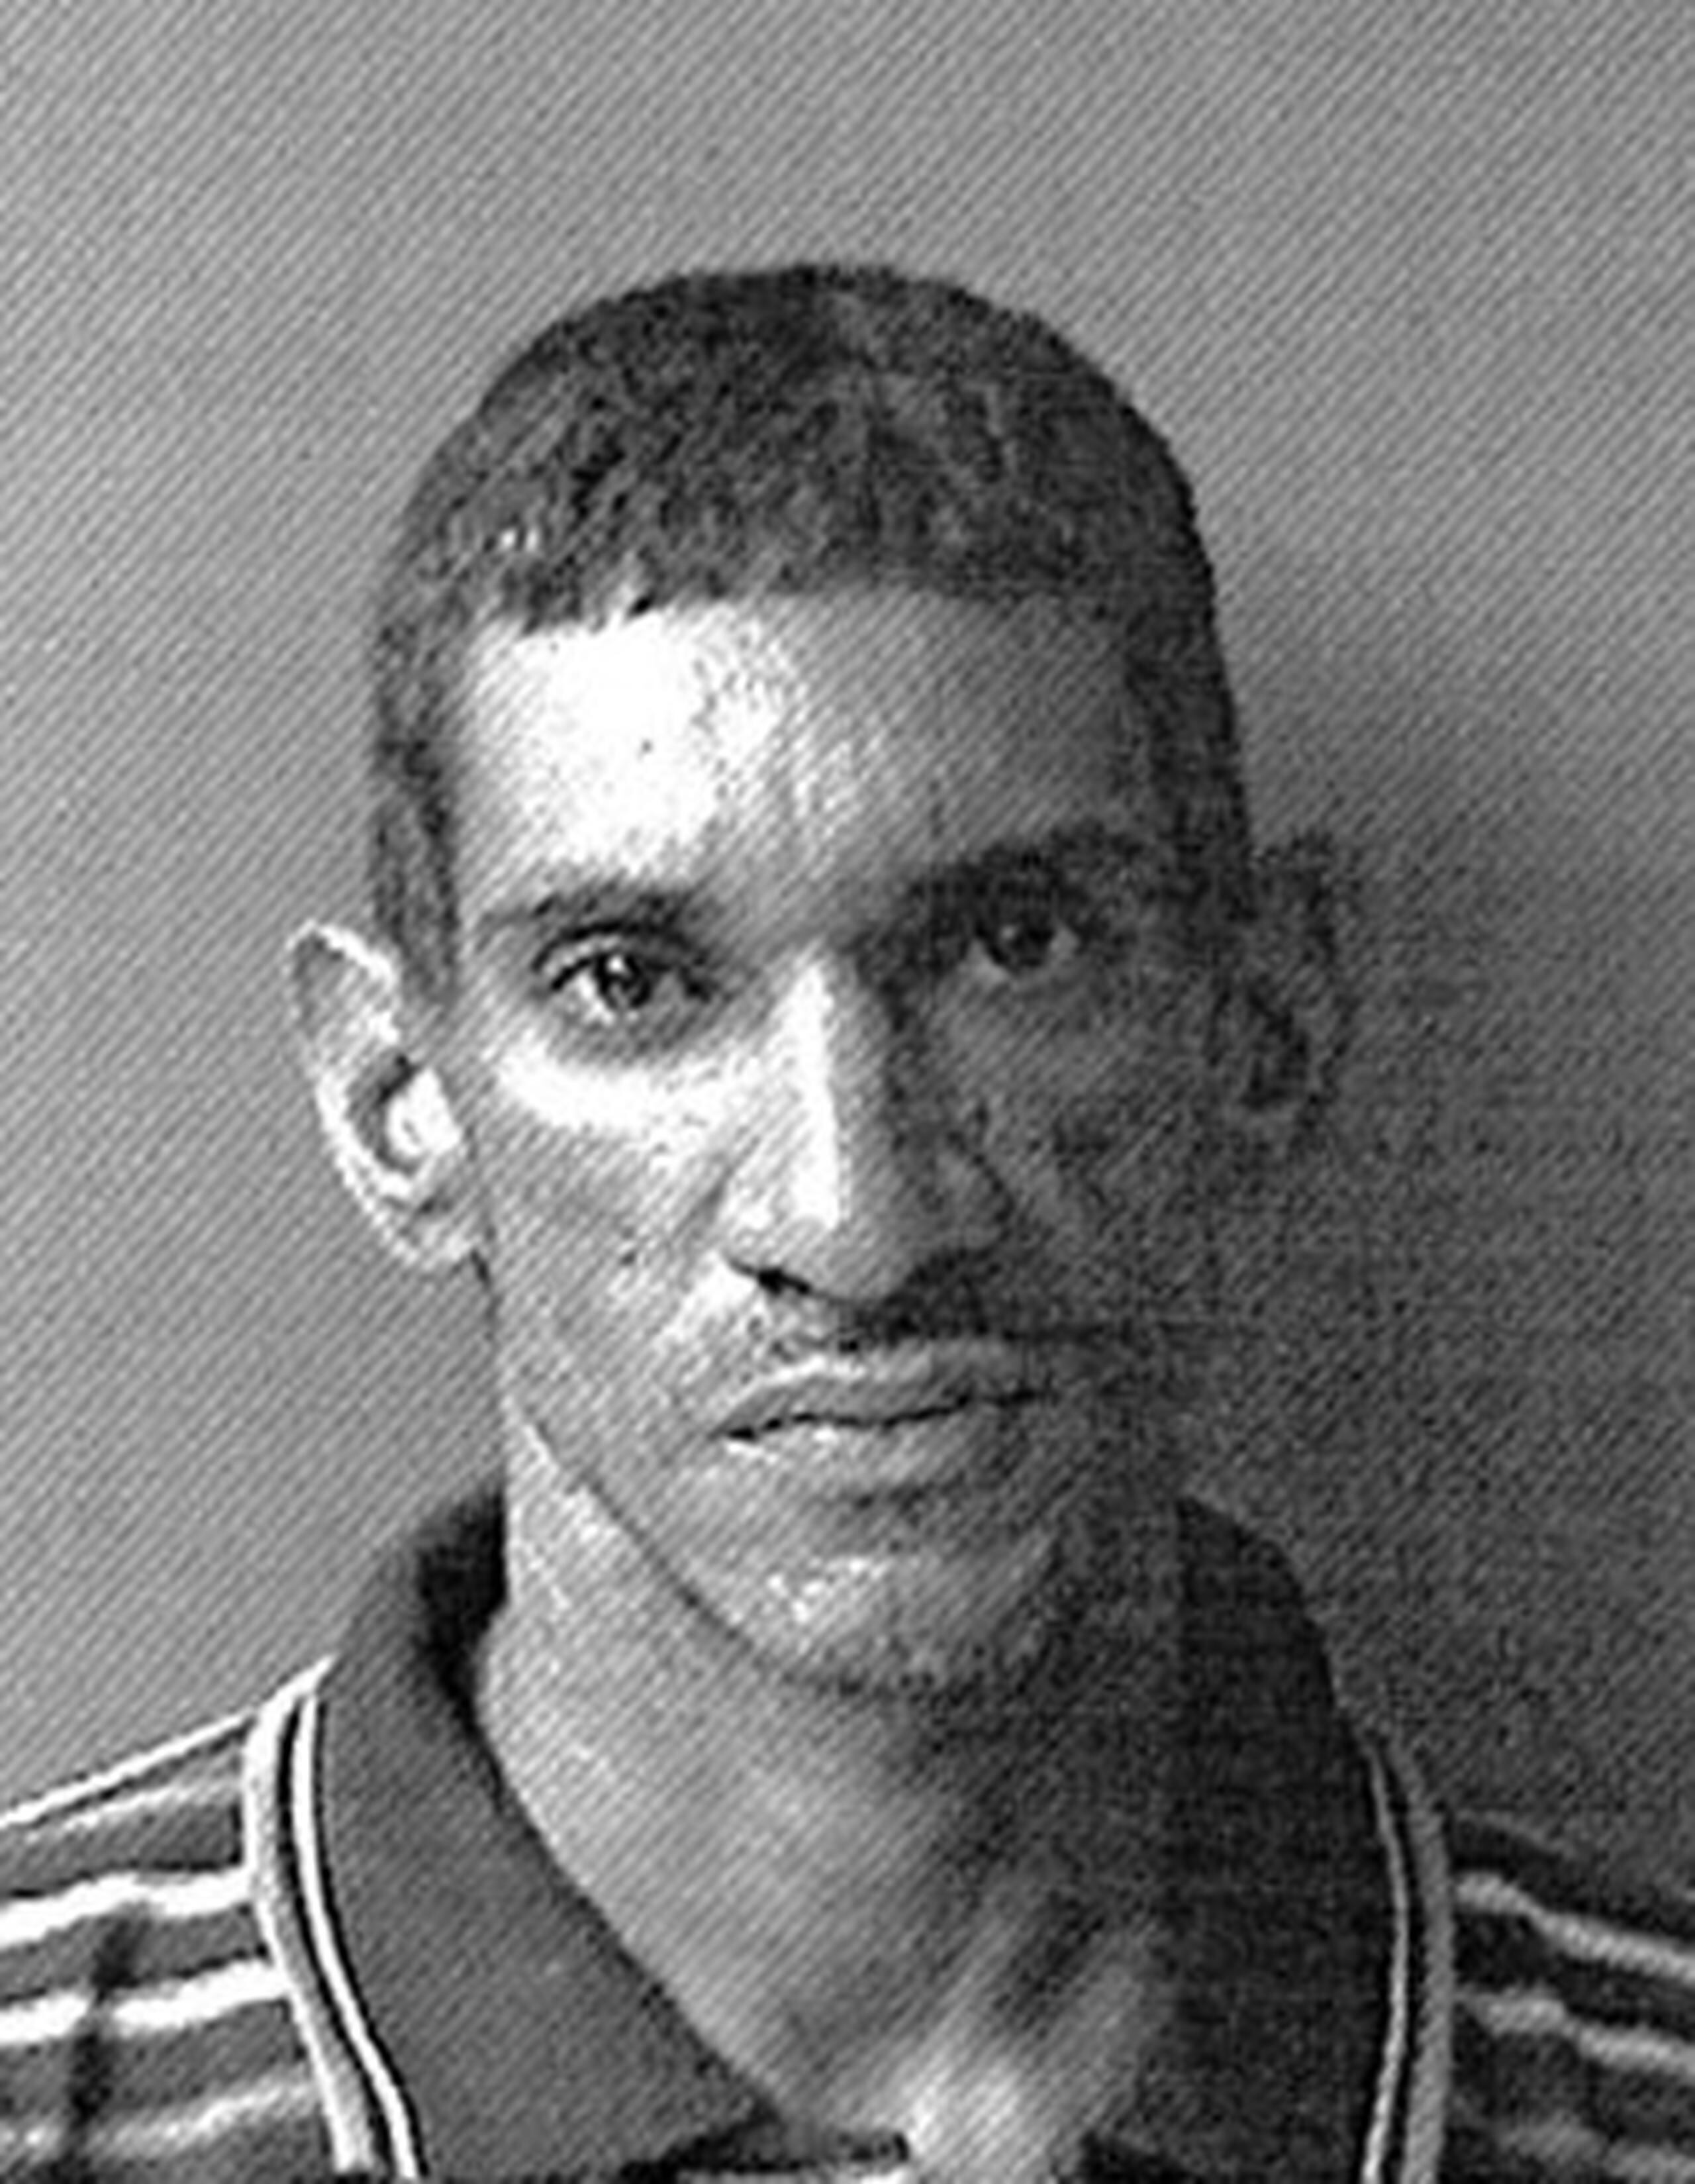 Víctor Gavilán Rodríguez, de 39 años y con antecedentes penales por robo, fue identificado hoy, martes, mediante rueda de confrontación. (Suministrada)